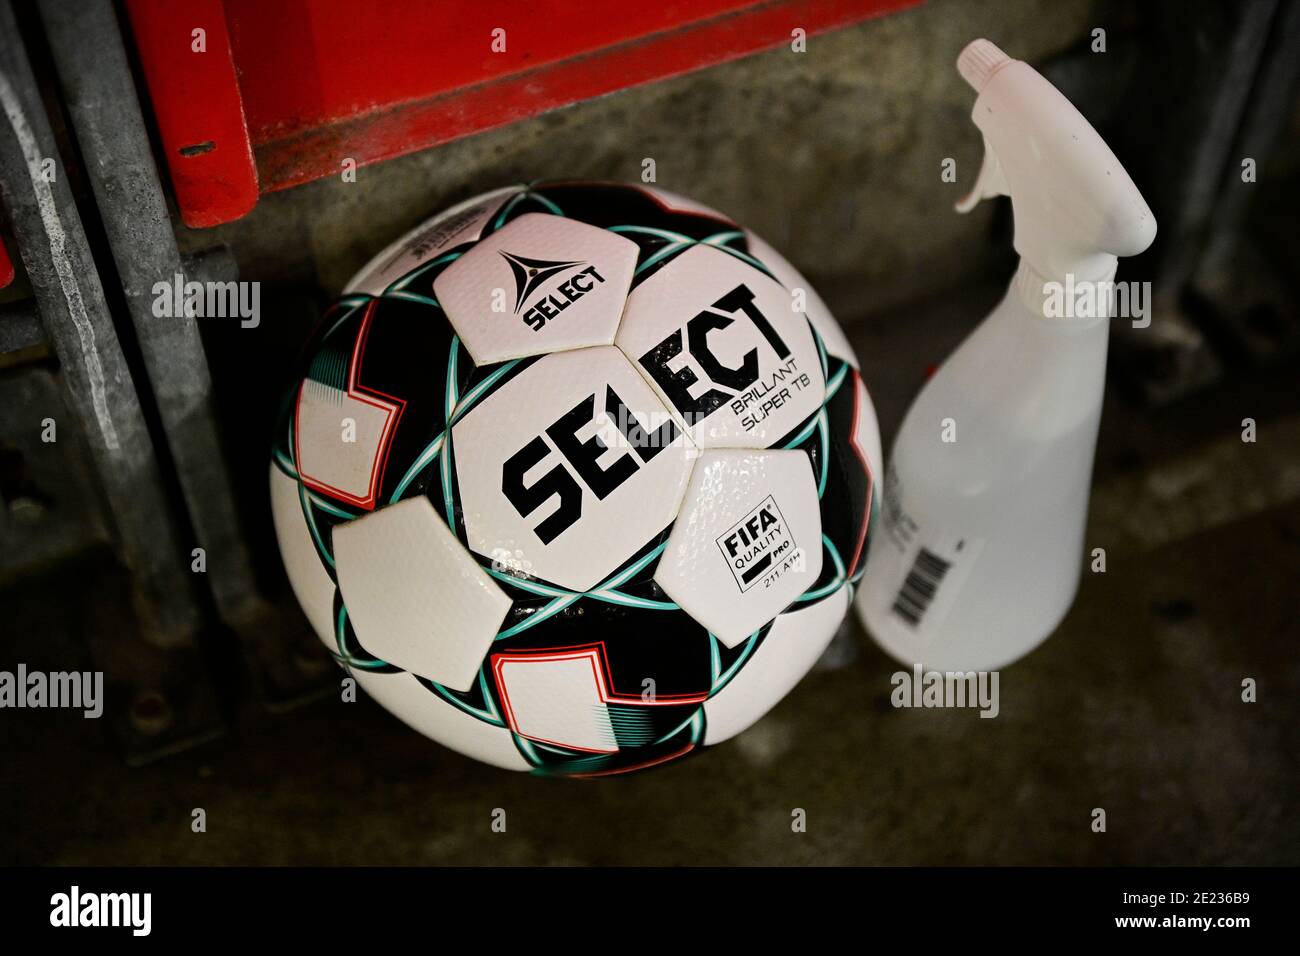 Abbildung Bild zeigt den offiziellen Spielball und eine desinfizierende Flasche bei einem Fußballspiel zwischen Standard de Liege und Waasland-Beveren, Mon Stockfoto